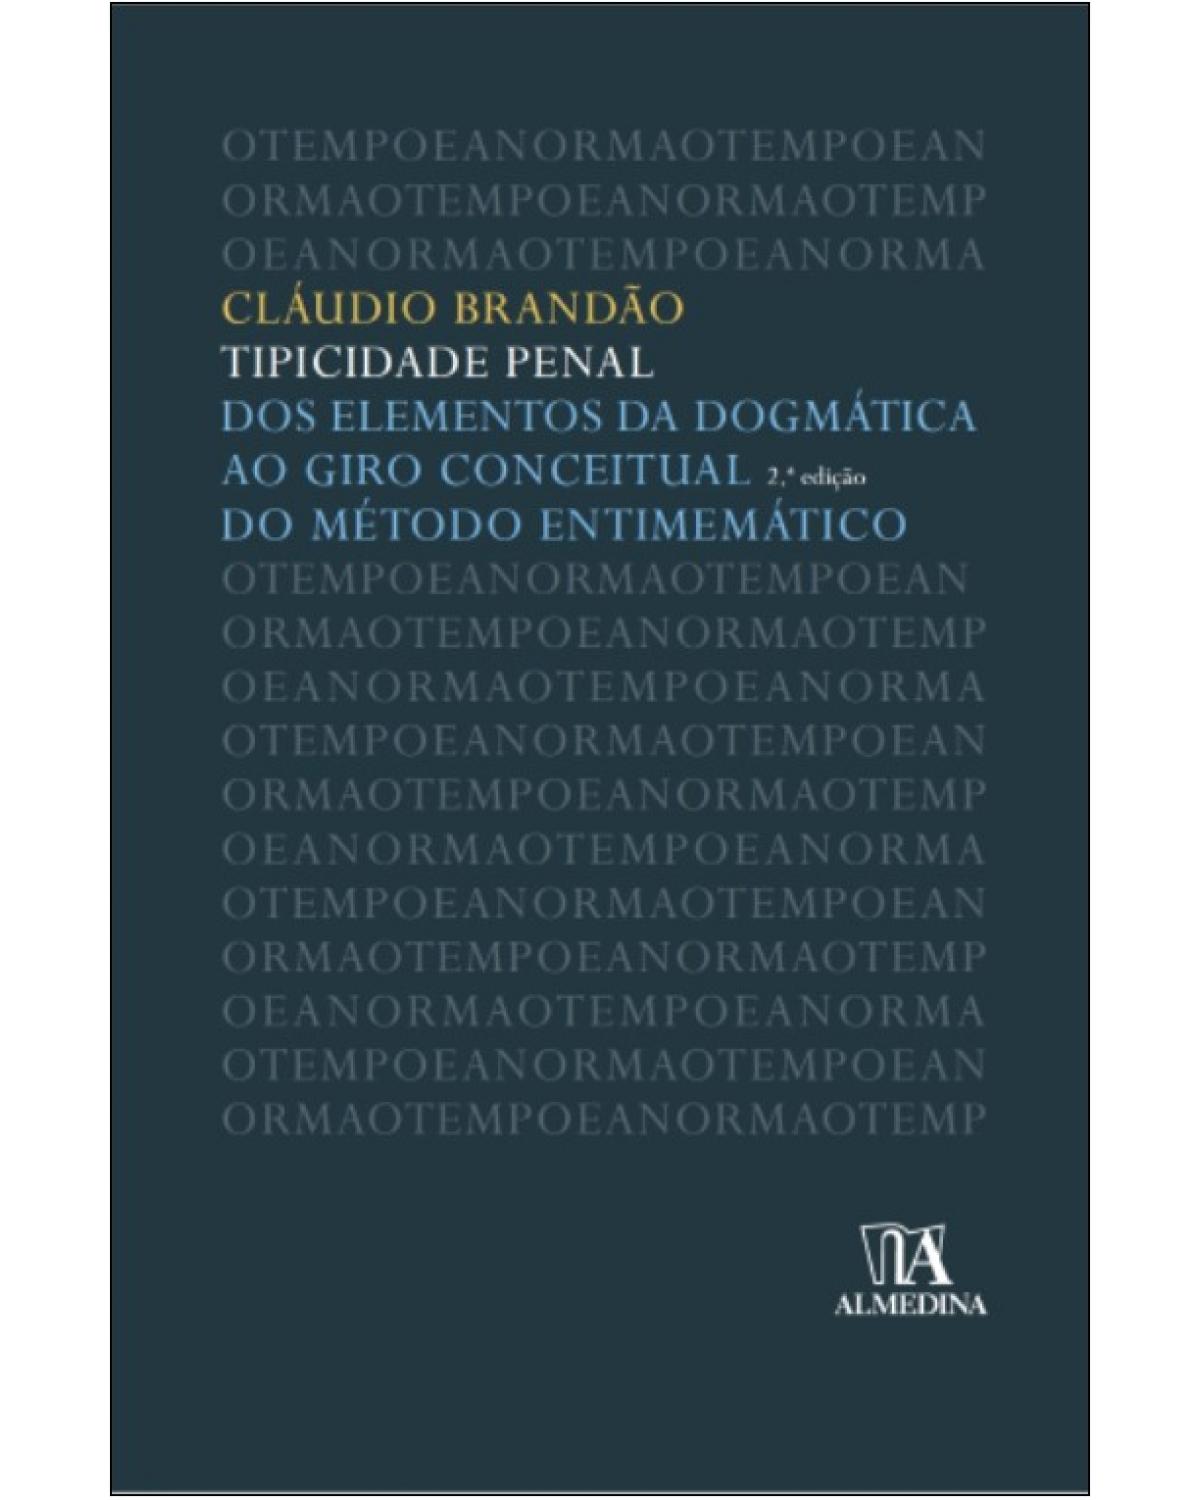 Tipicidade penal - Dos elementos da dogmática ao giro conceitual do método entimemático - 2ª Edição | 2014